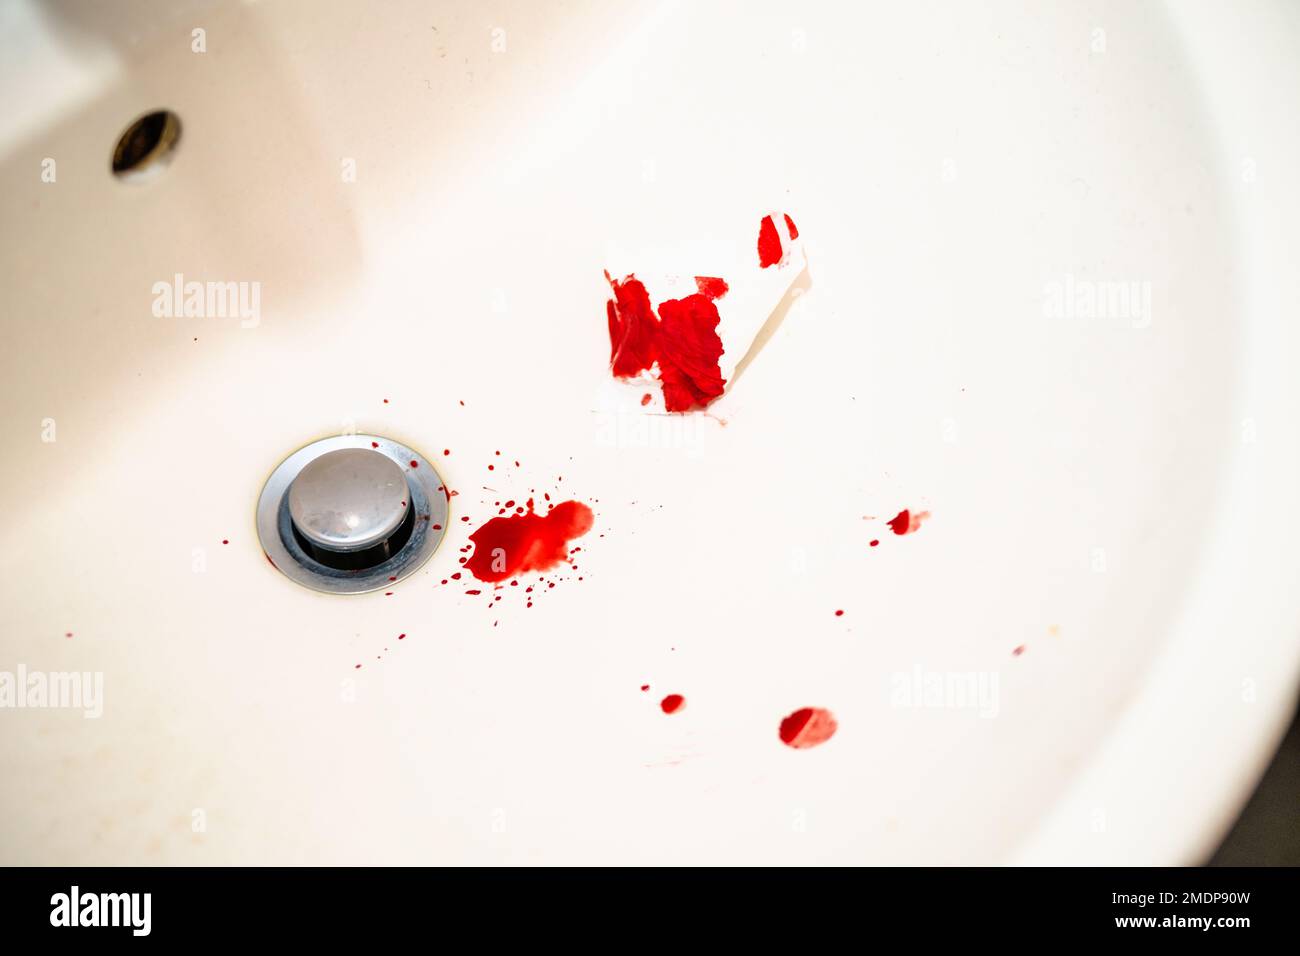 Gouttes de sang rouge dans le lavabo blanc de la salle de bains. Le sang réel comme traces et preuve d'un crime. Concept de saignement de nez, de blessure, de violence, de meurtre ou de suicide. Sang Banque D'Images